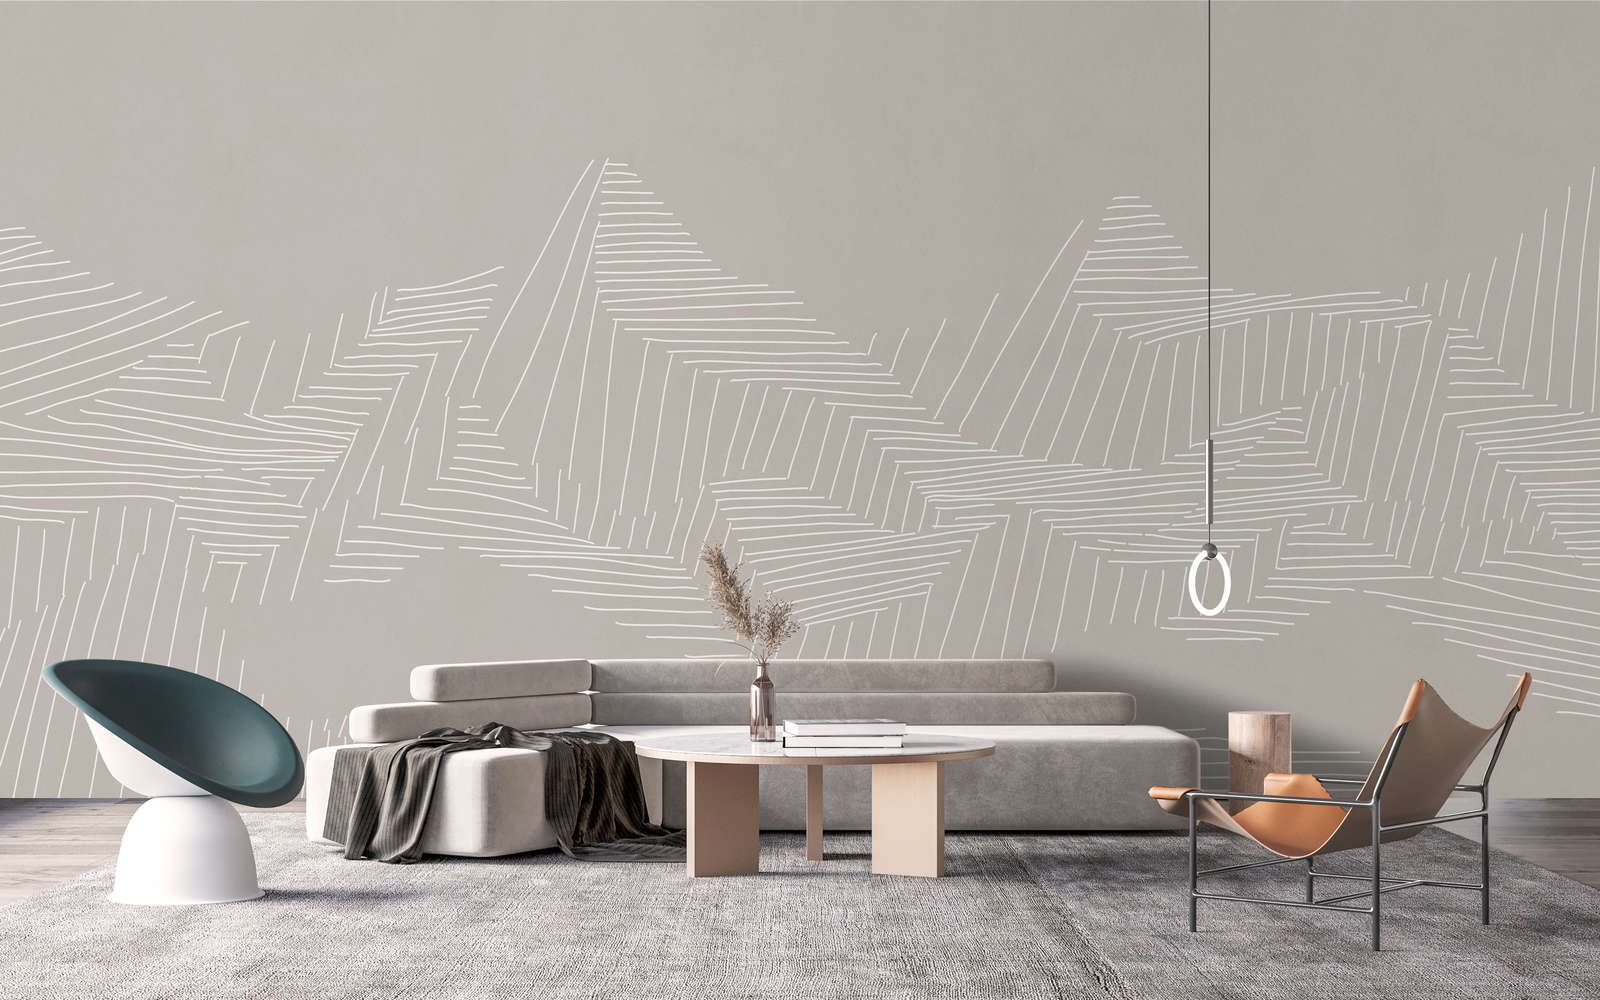             Digital behang »victor« - Berglandschap met lijnenpatroon - Grijs | Gladde, licht parelmoerglanzende vliesstof
        